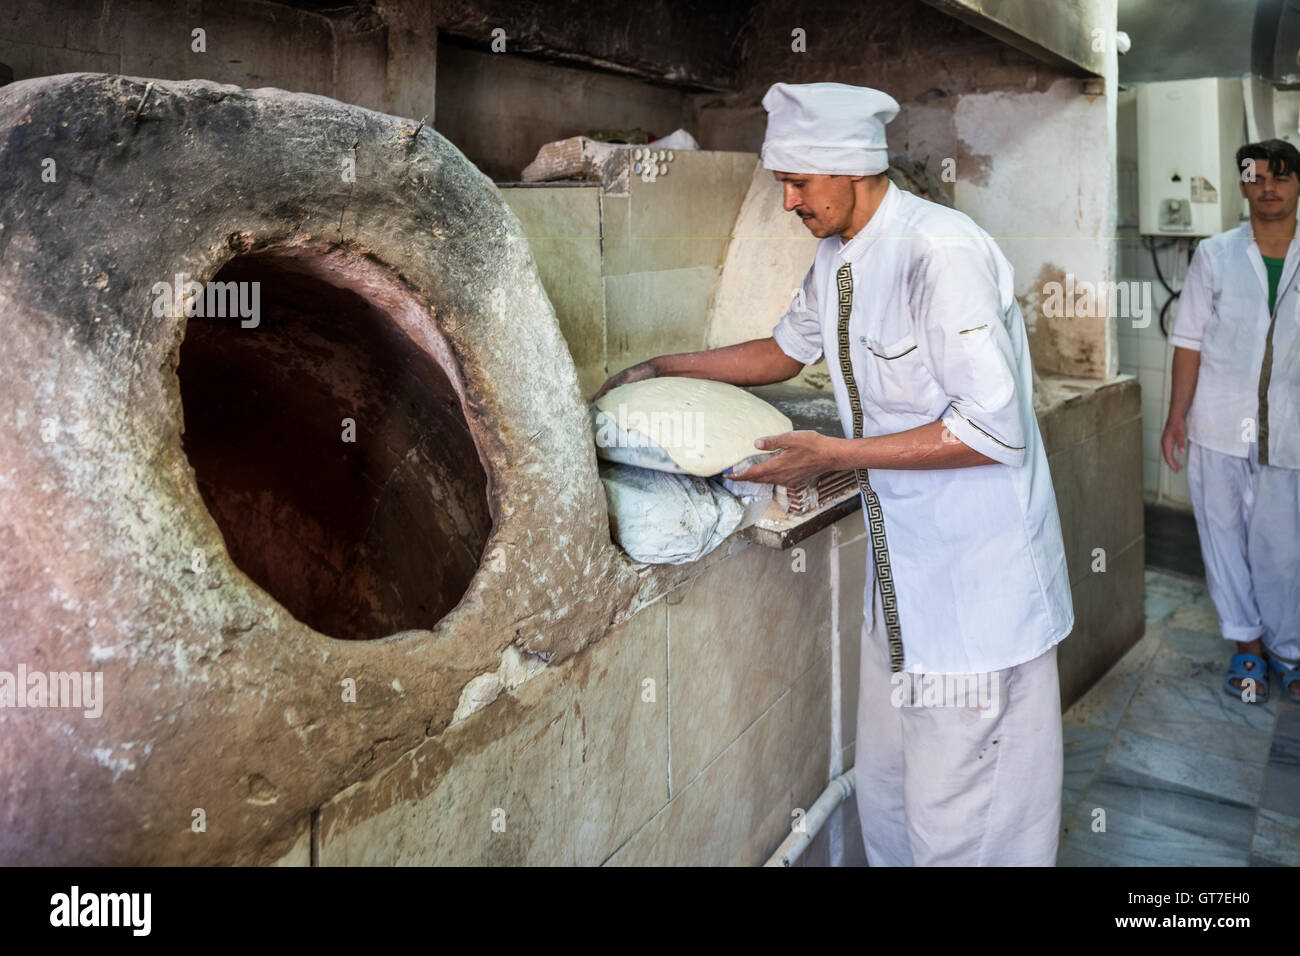 Un panettiere utilizza un forno tandoori per cuocere fresche pane taftoon  in Yazd, Iran Foto stock - Alamy